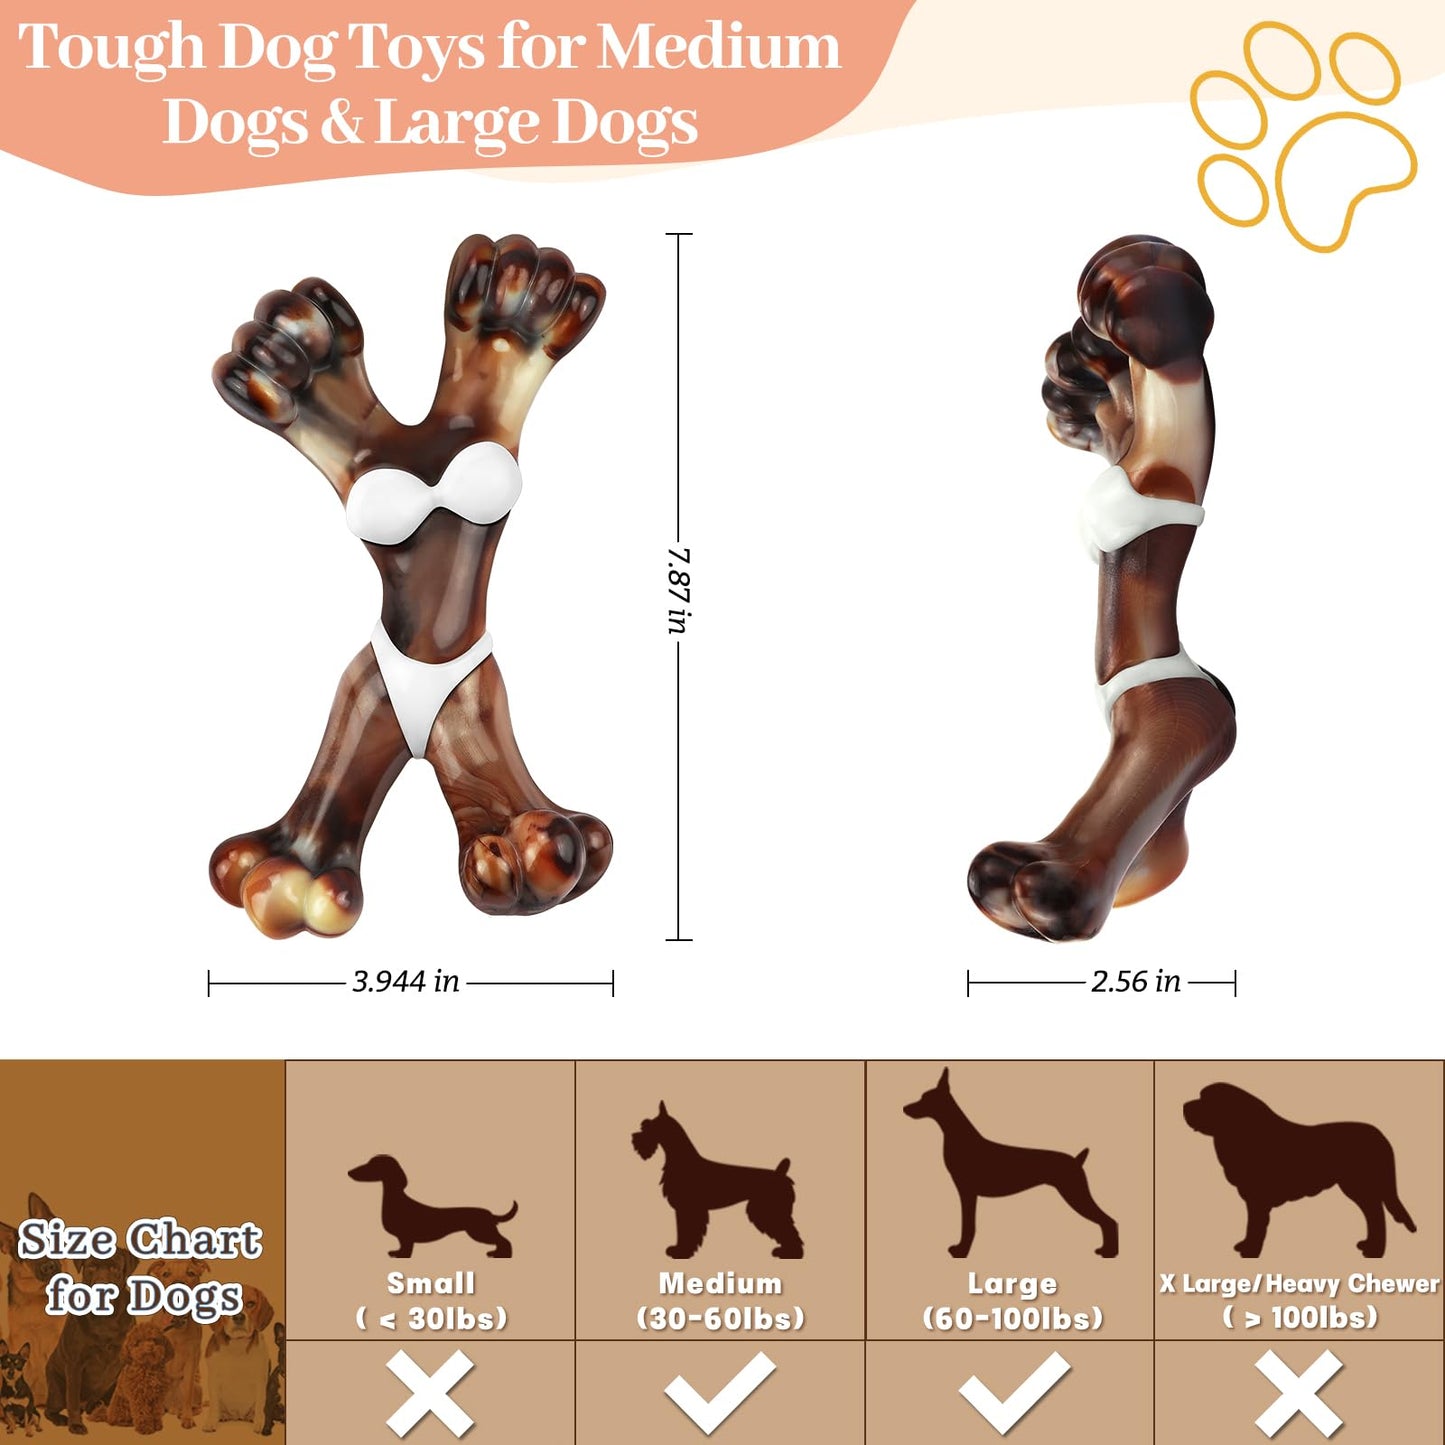 Tough Dog Toys - Indestructible, Large Breed